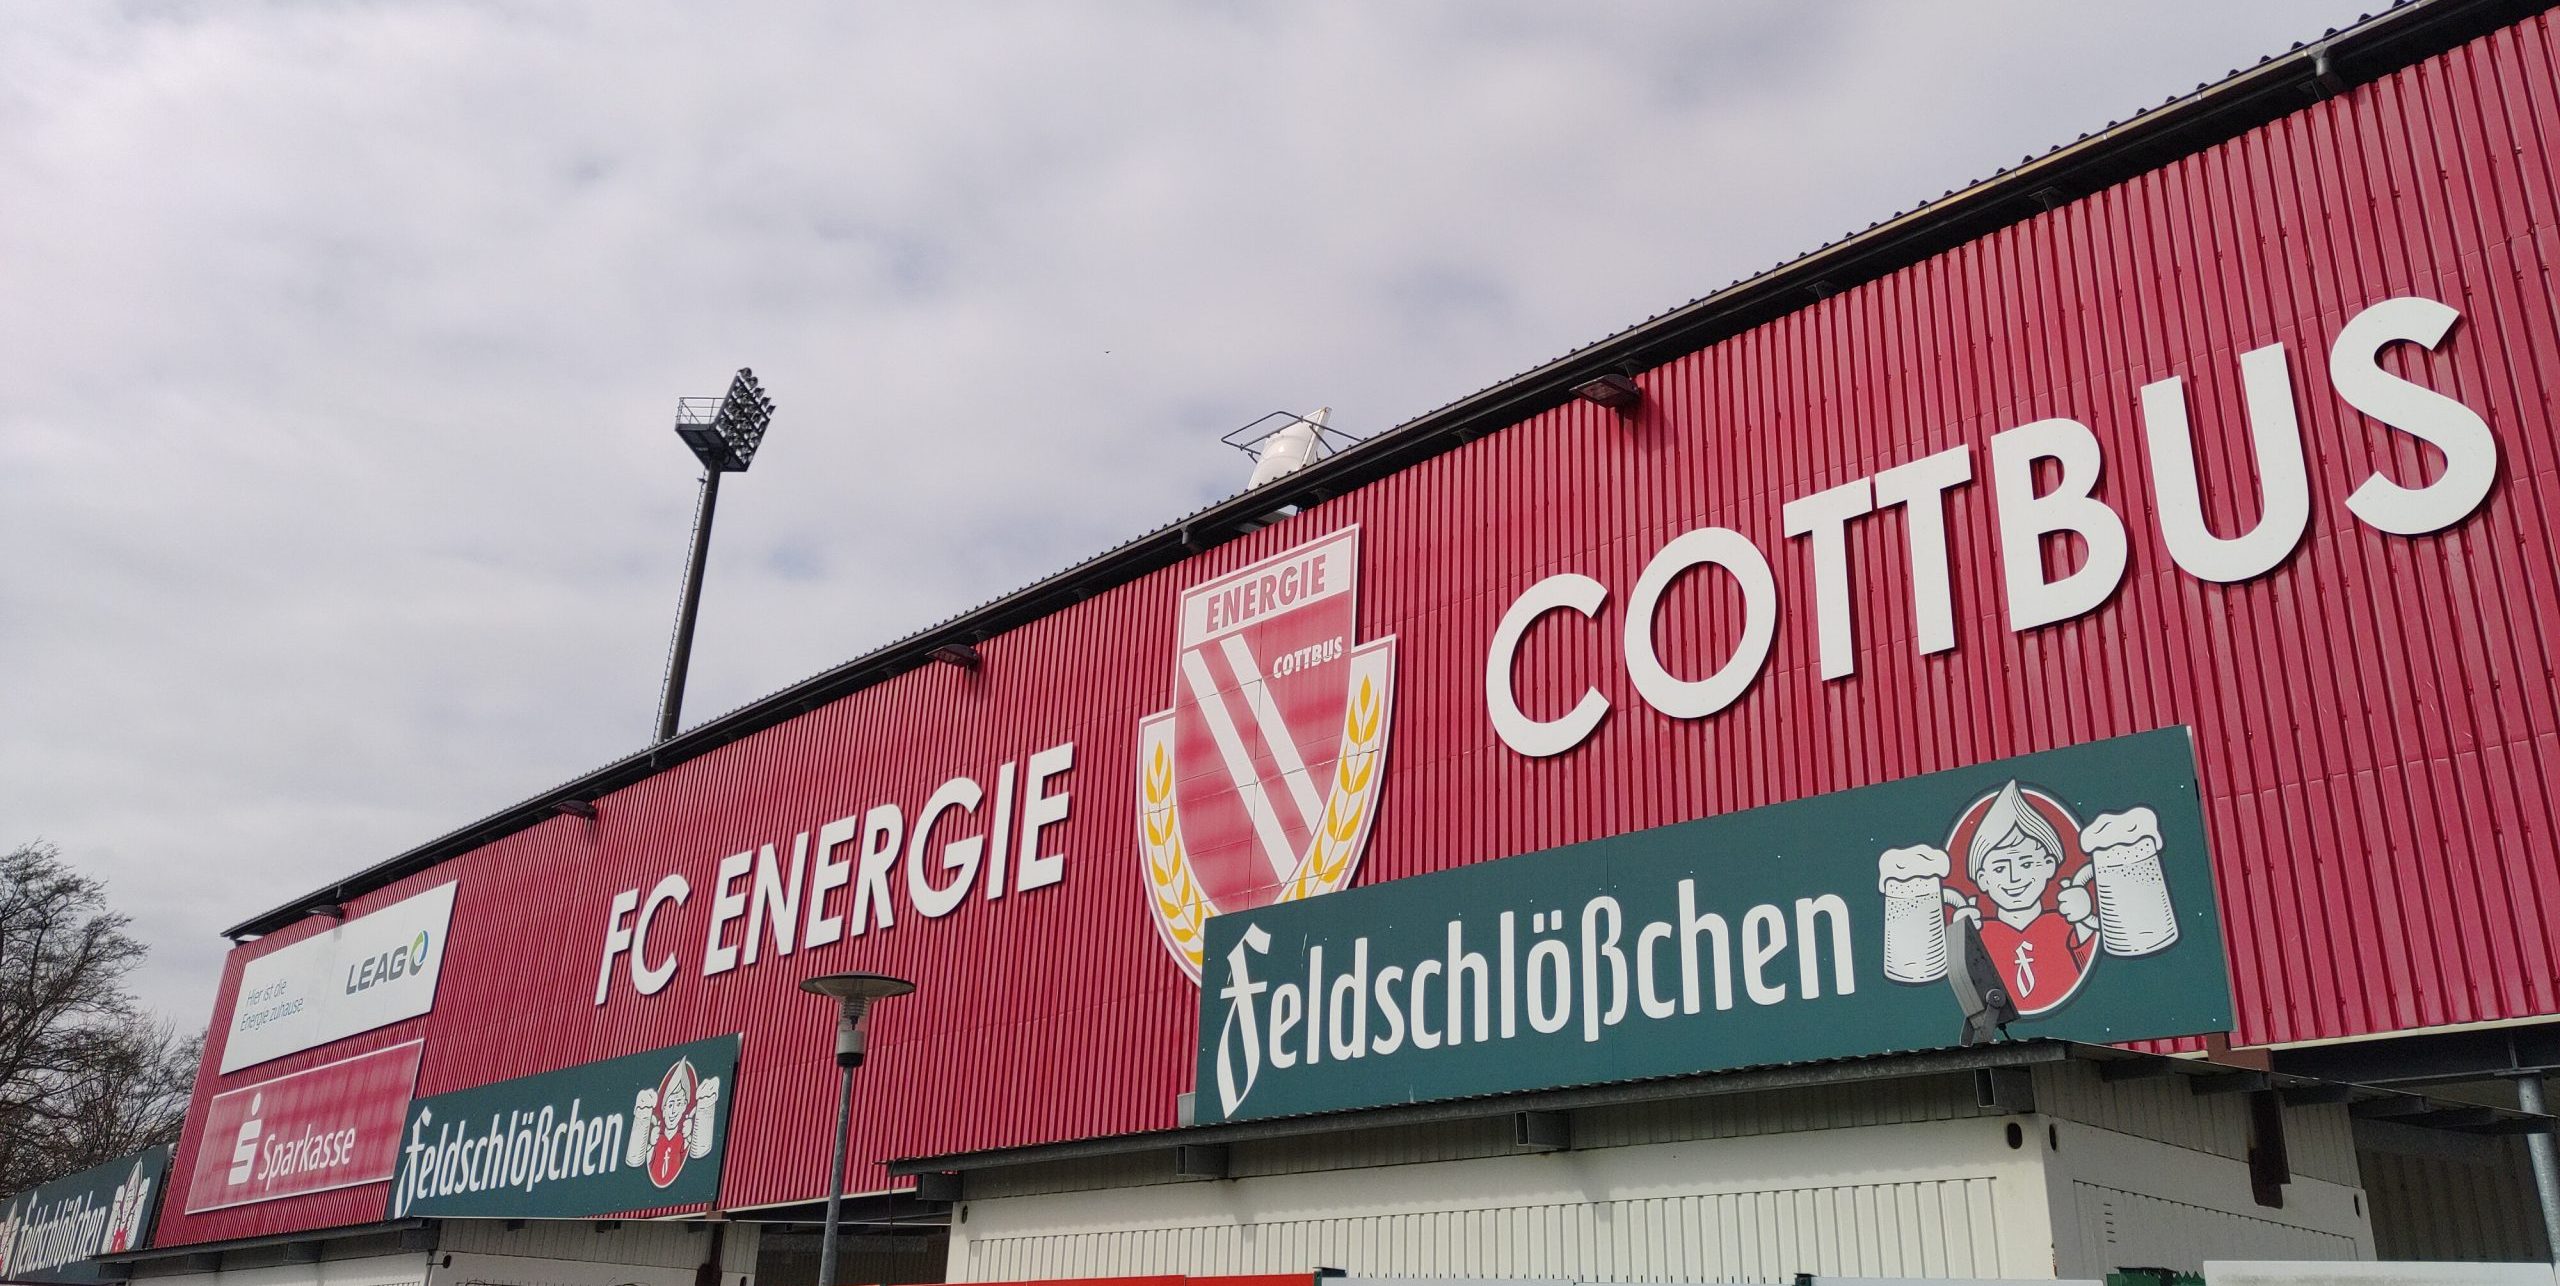 Blick auf eine Stadionwand, darauf steht "FC Energie Cottbus" und darunter Werbung für "feldschlößchen"